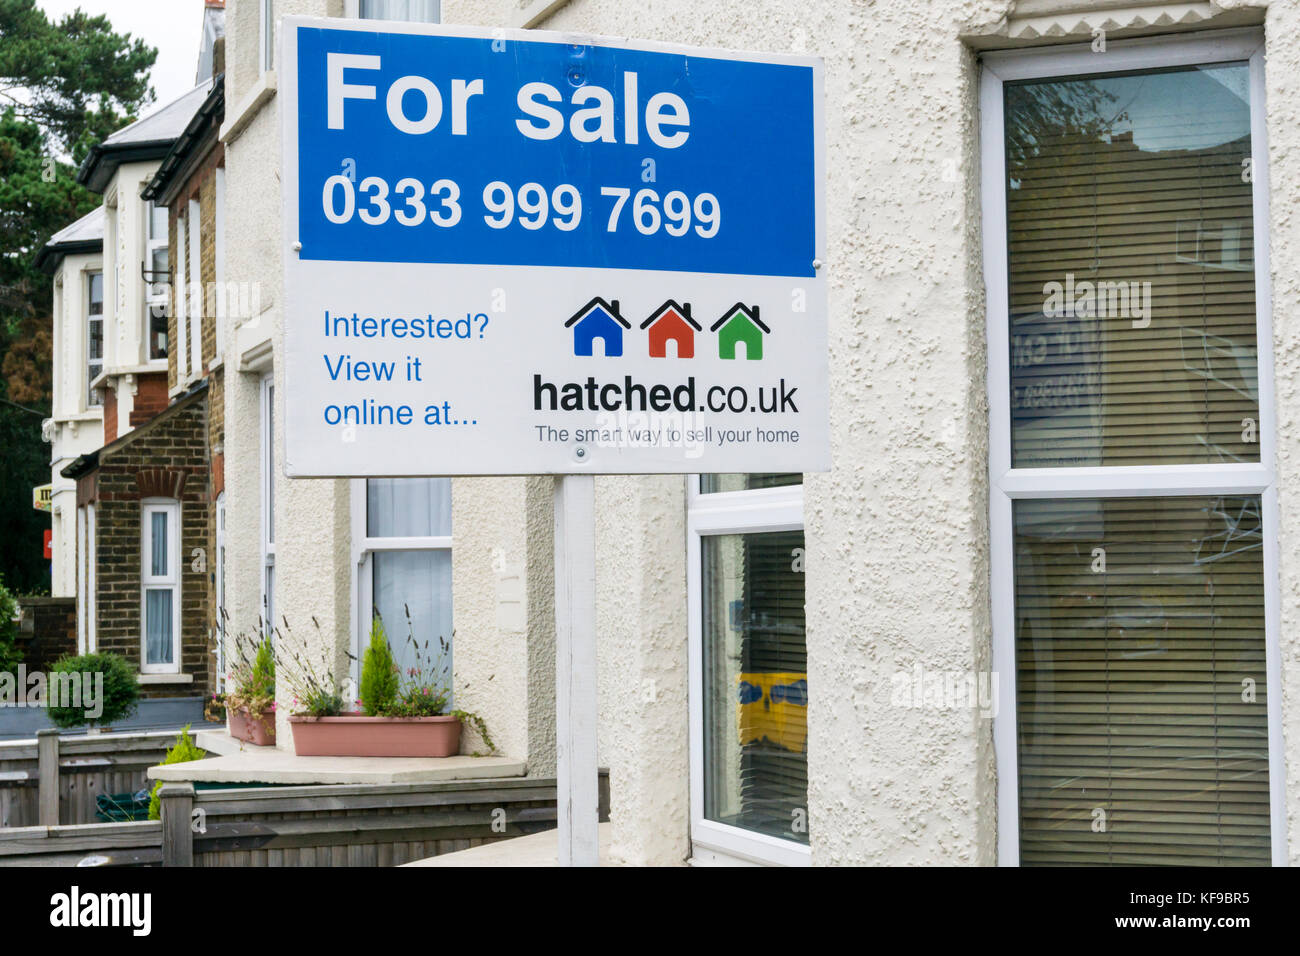 A für Verkauf Zeichen durch die online Immobilien geschlüpft.co.uk, auf einem Haus in Bromley, South London Stockfoto